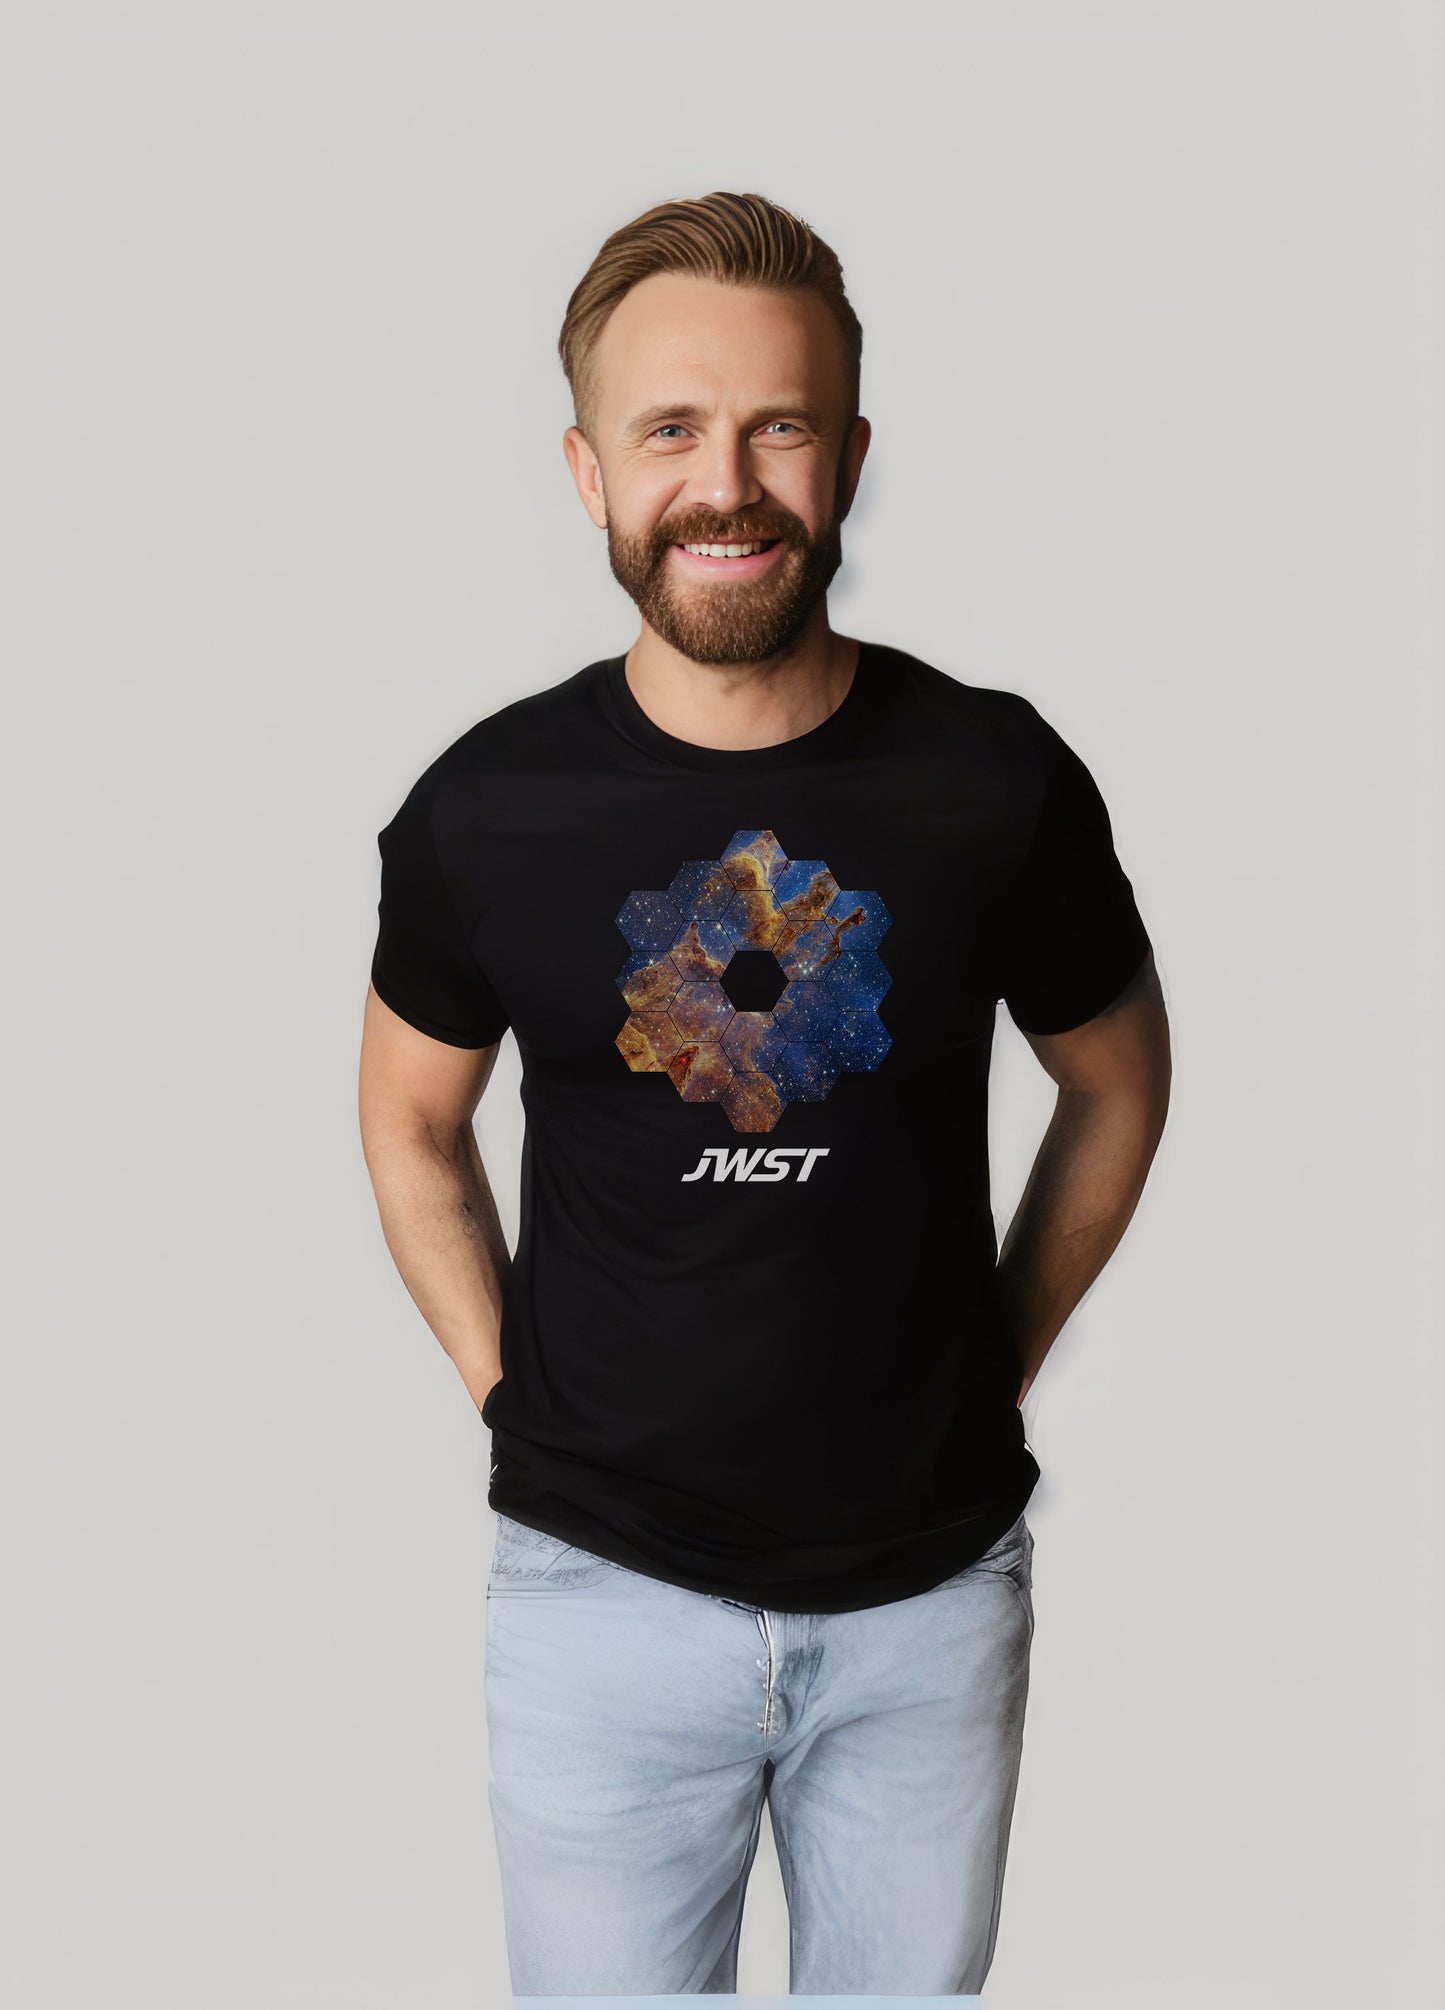 JWST Pillars Of Creation T-shirt